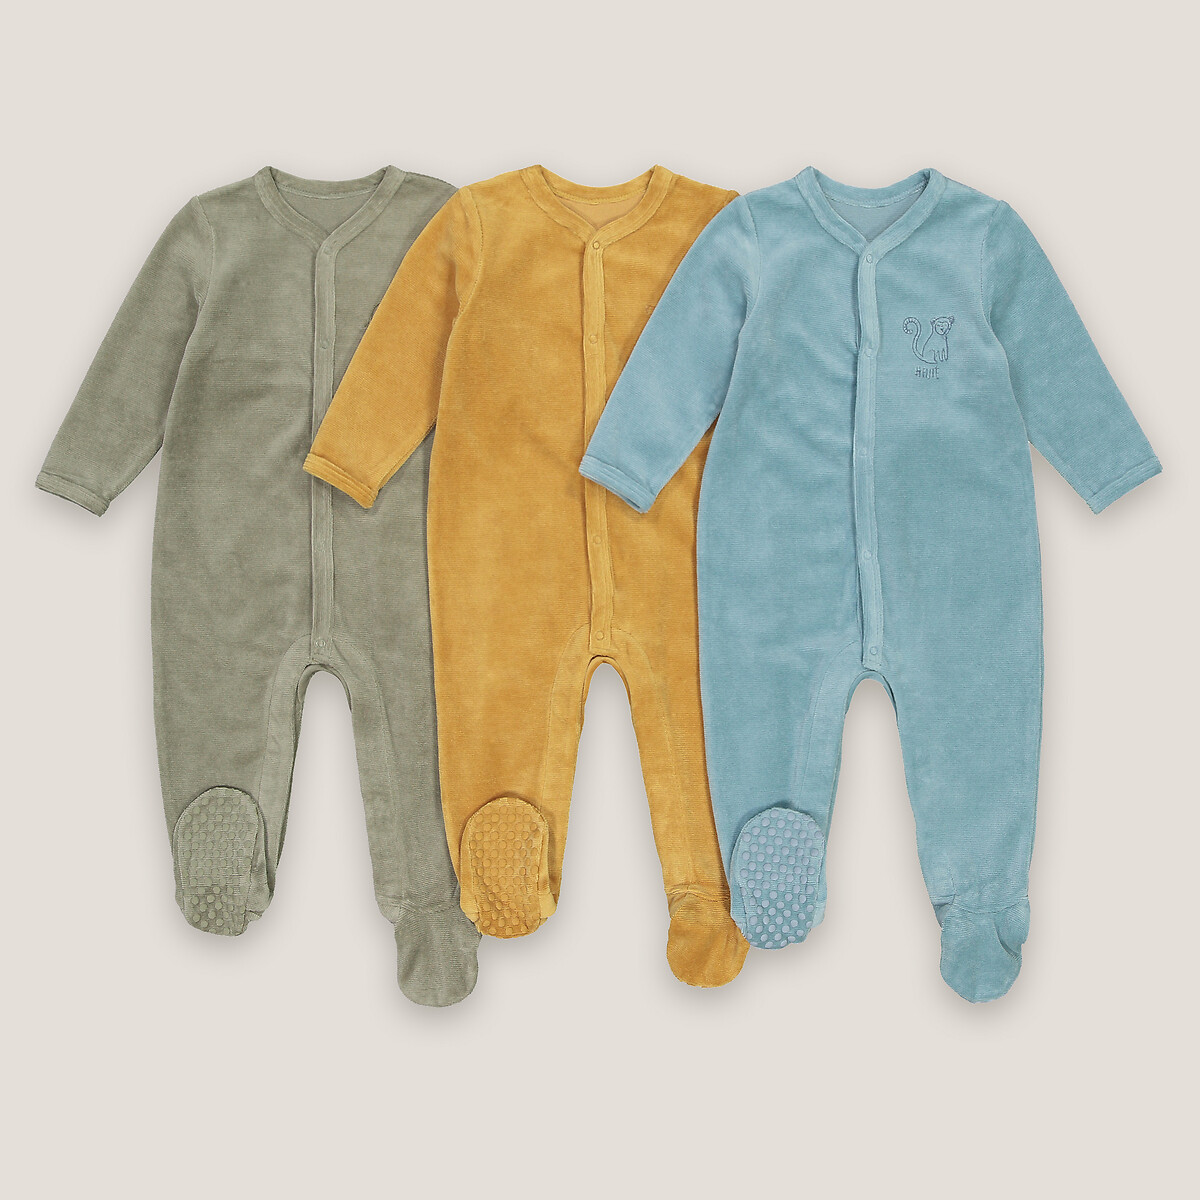 Пижама Цельная из велюра для детей до 2 лет 0 мес. - 50 см желтый